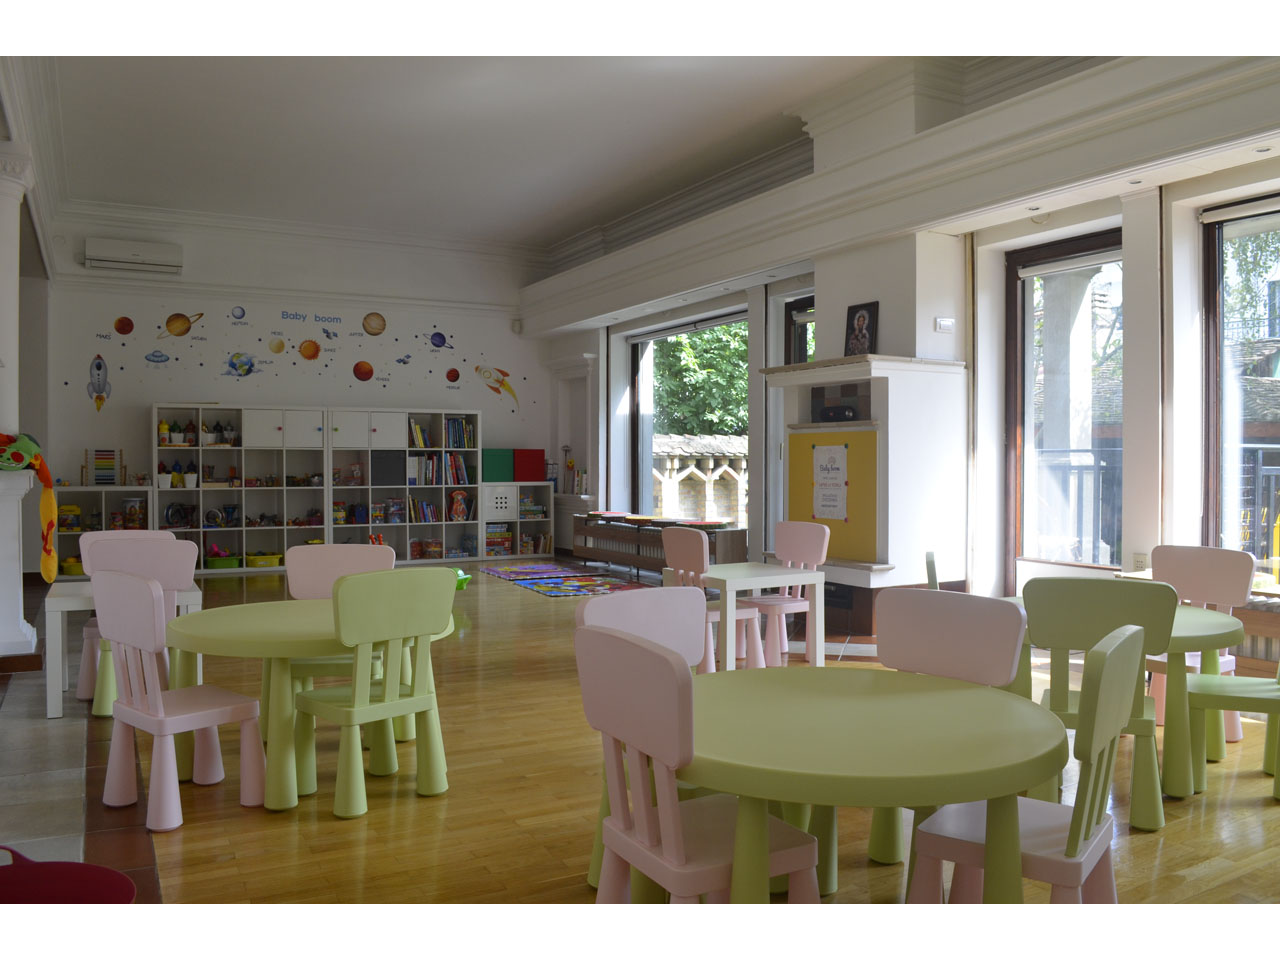 BABY BOOM Kindergartens Belgrade - Photo 11